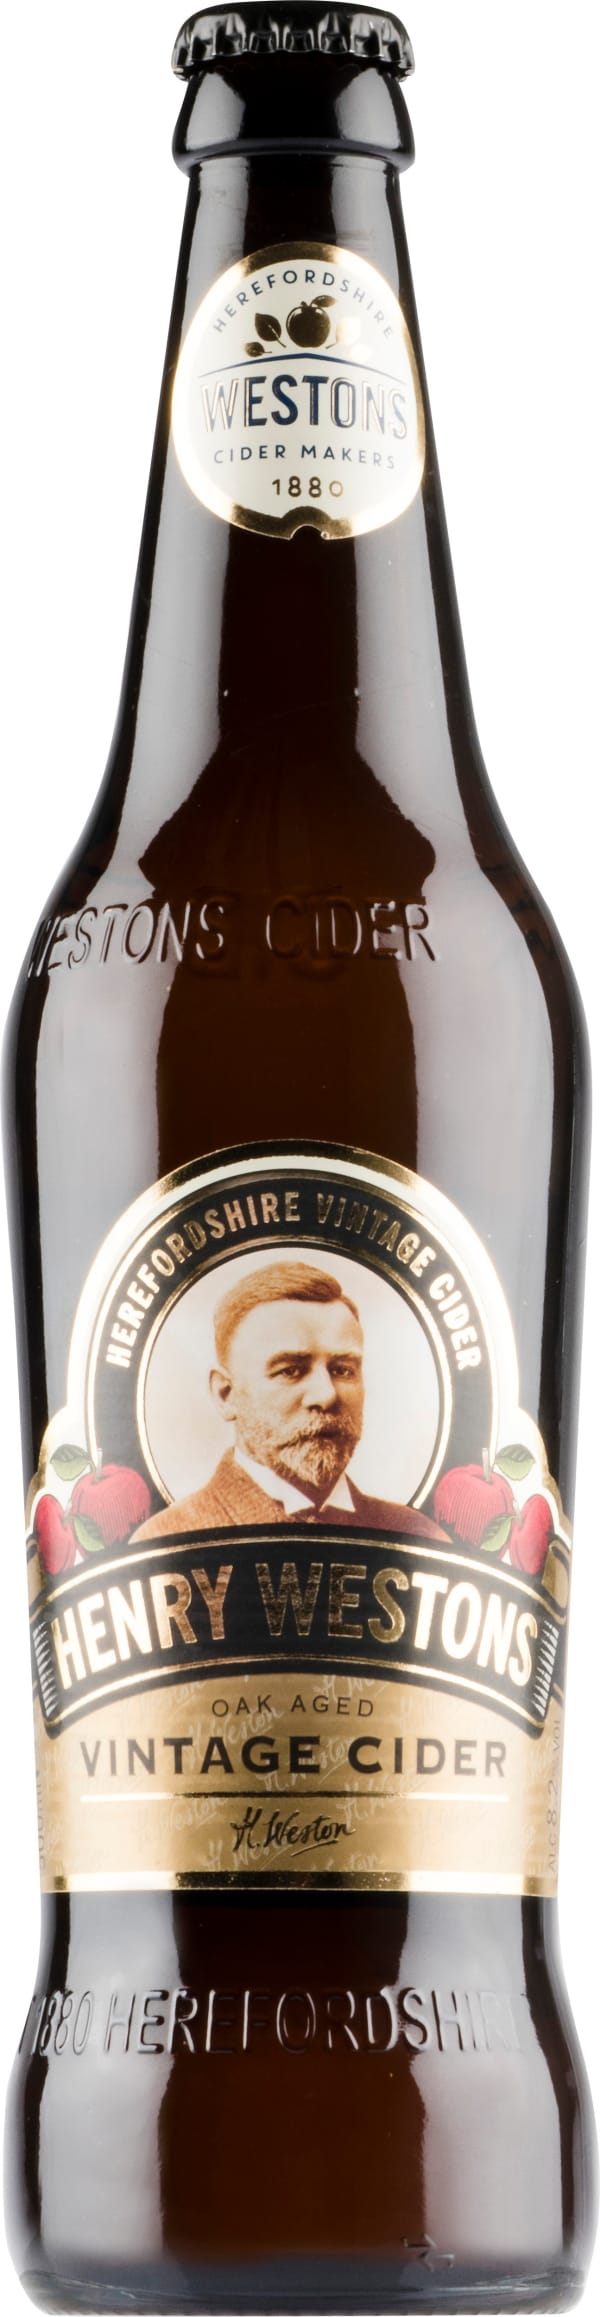 Henry Westons Vintage Cider 2019